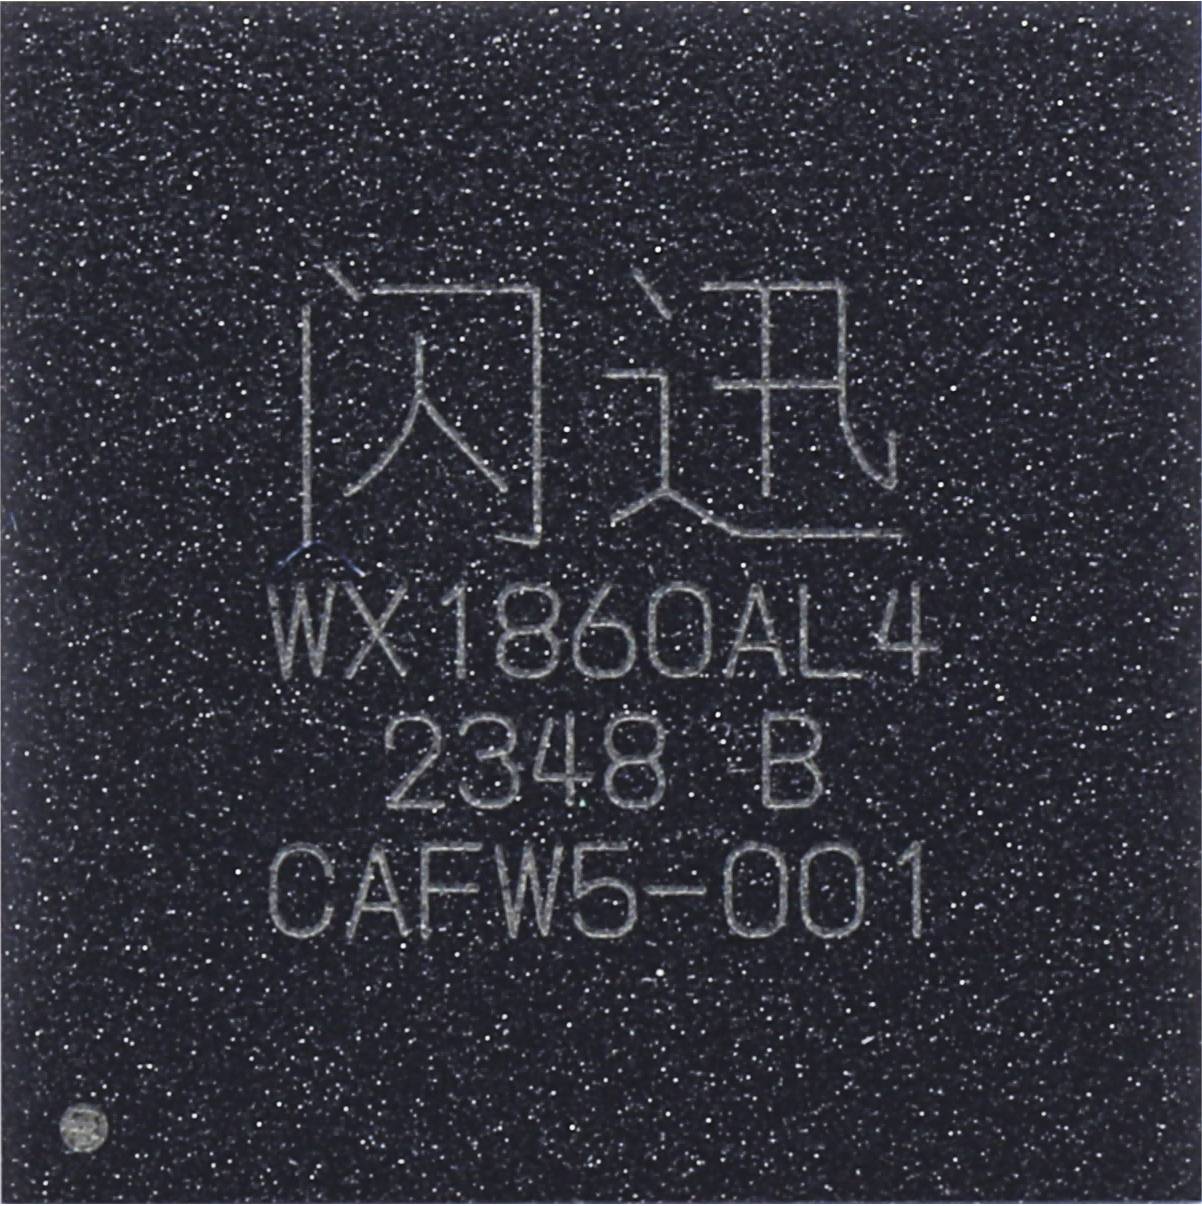 千兆专用类WX1860AL4